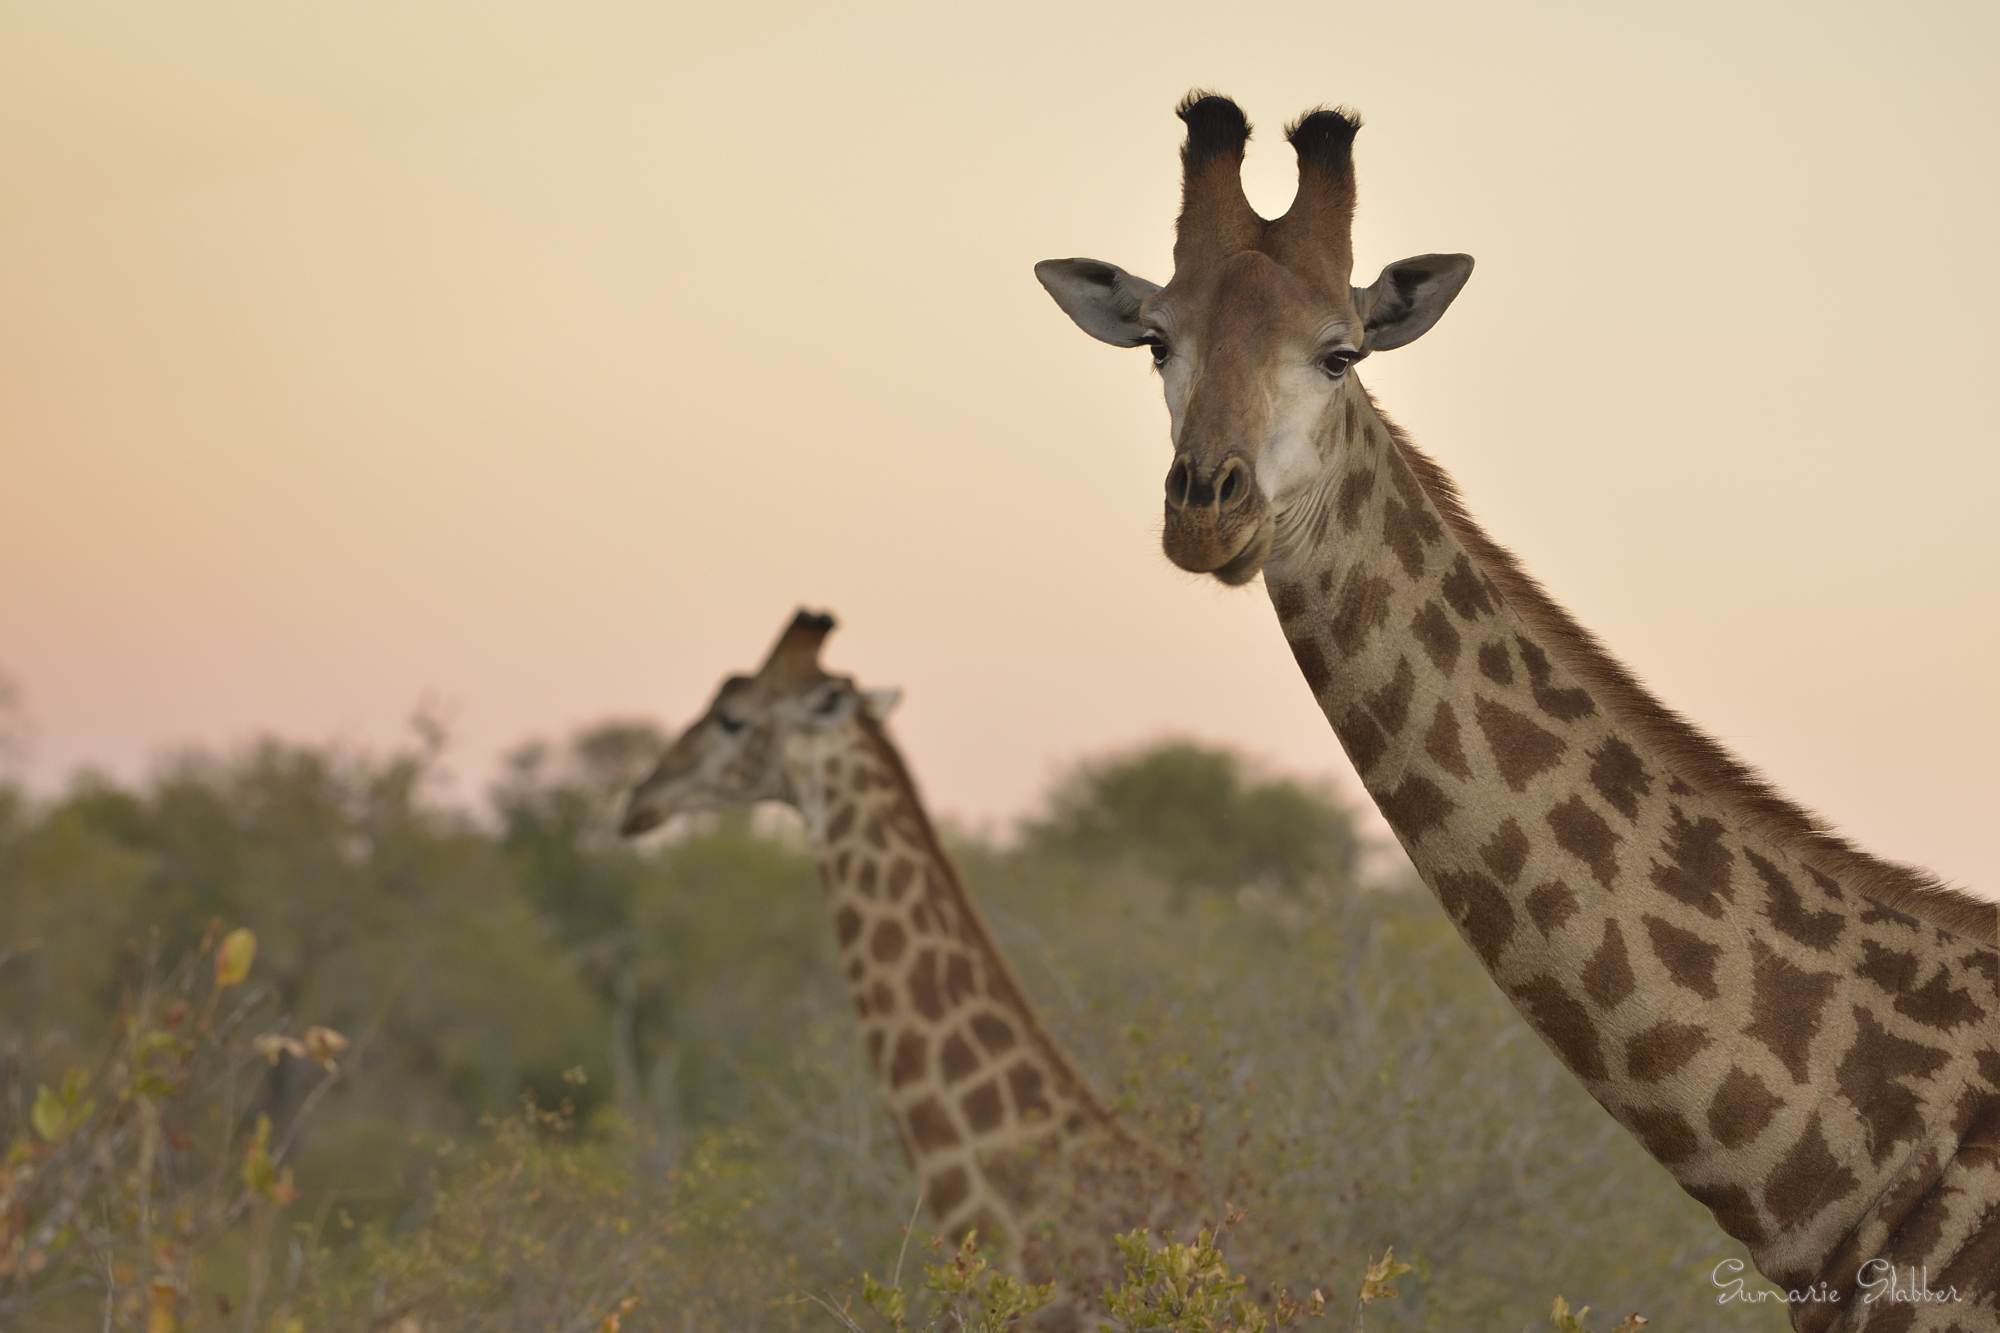 Sunset giraffes